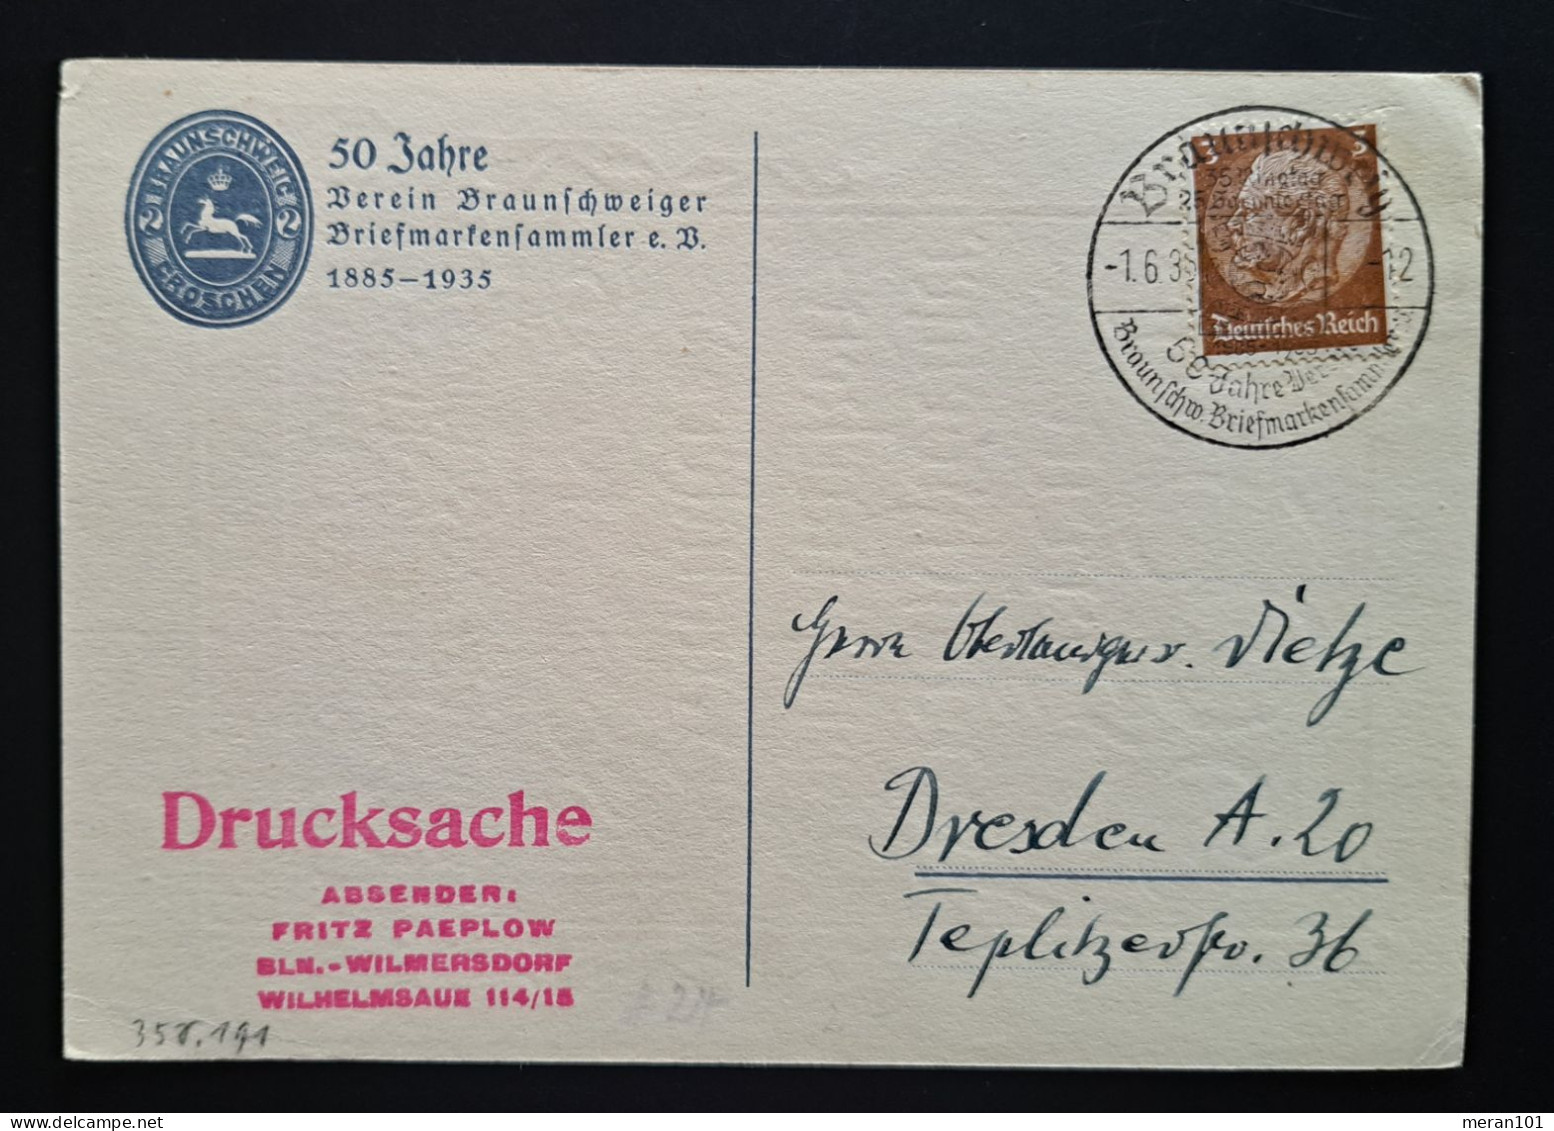 Privatpostkarte, 50 Jahre Verein Braunschweiger Briefmarkensammler Sonderstempel - Privat-Ganzsachen